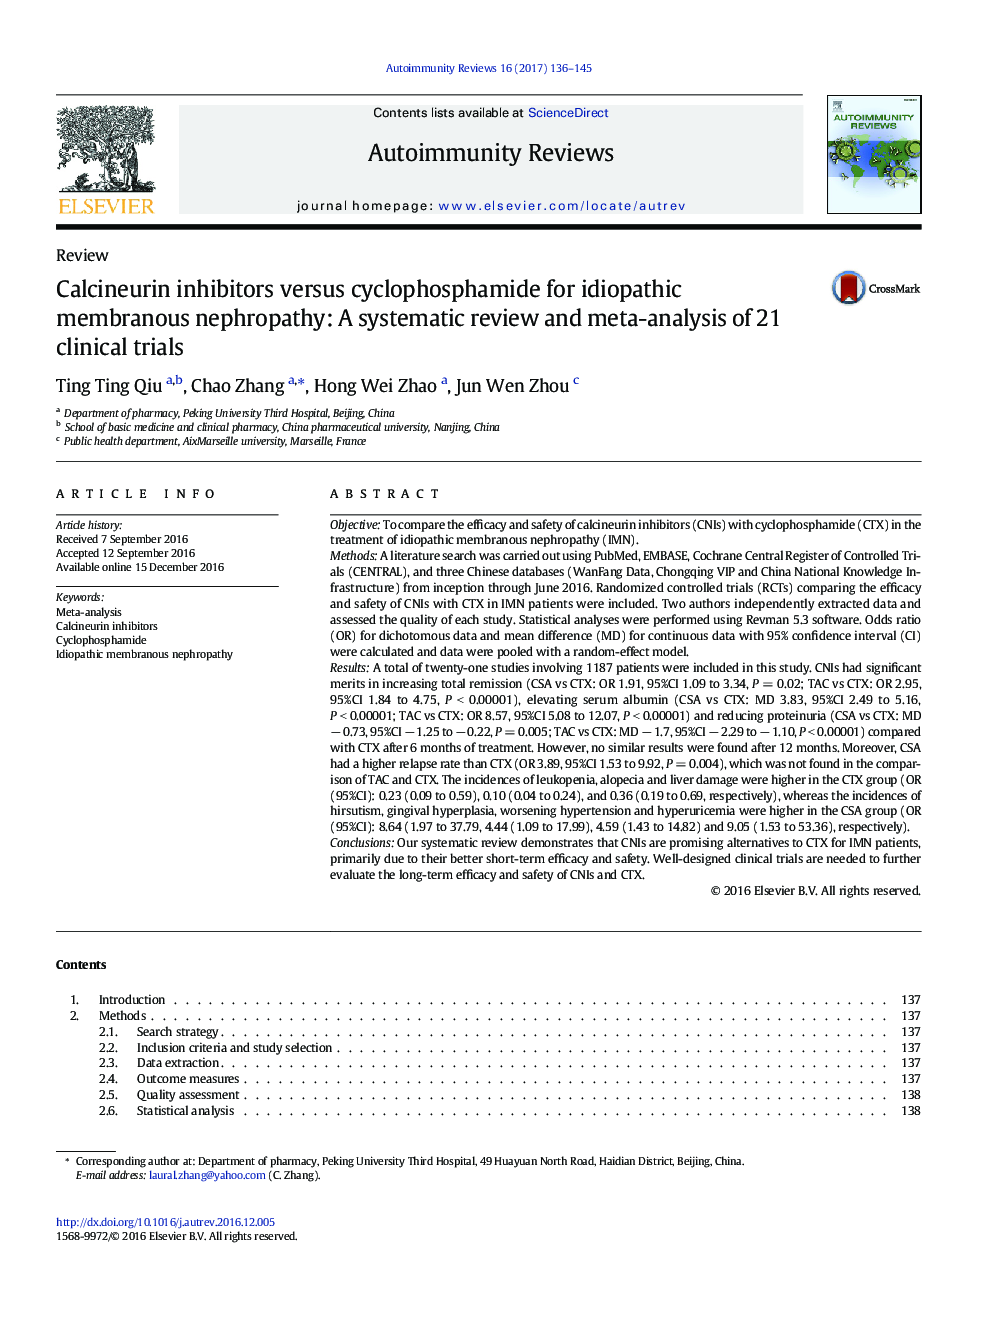 مهار کننده های کالسینورین در مقایسه با سیکلوفسفامید برای نفروپاتی غشایی ایدئوپاتیک: بررسی منظم و متاآنالیز 21 آزمایش بالینی 